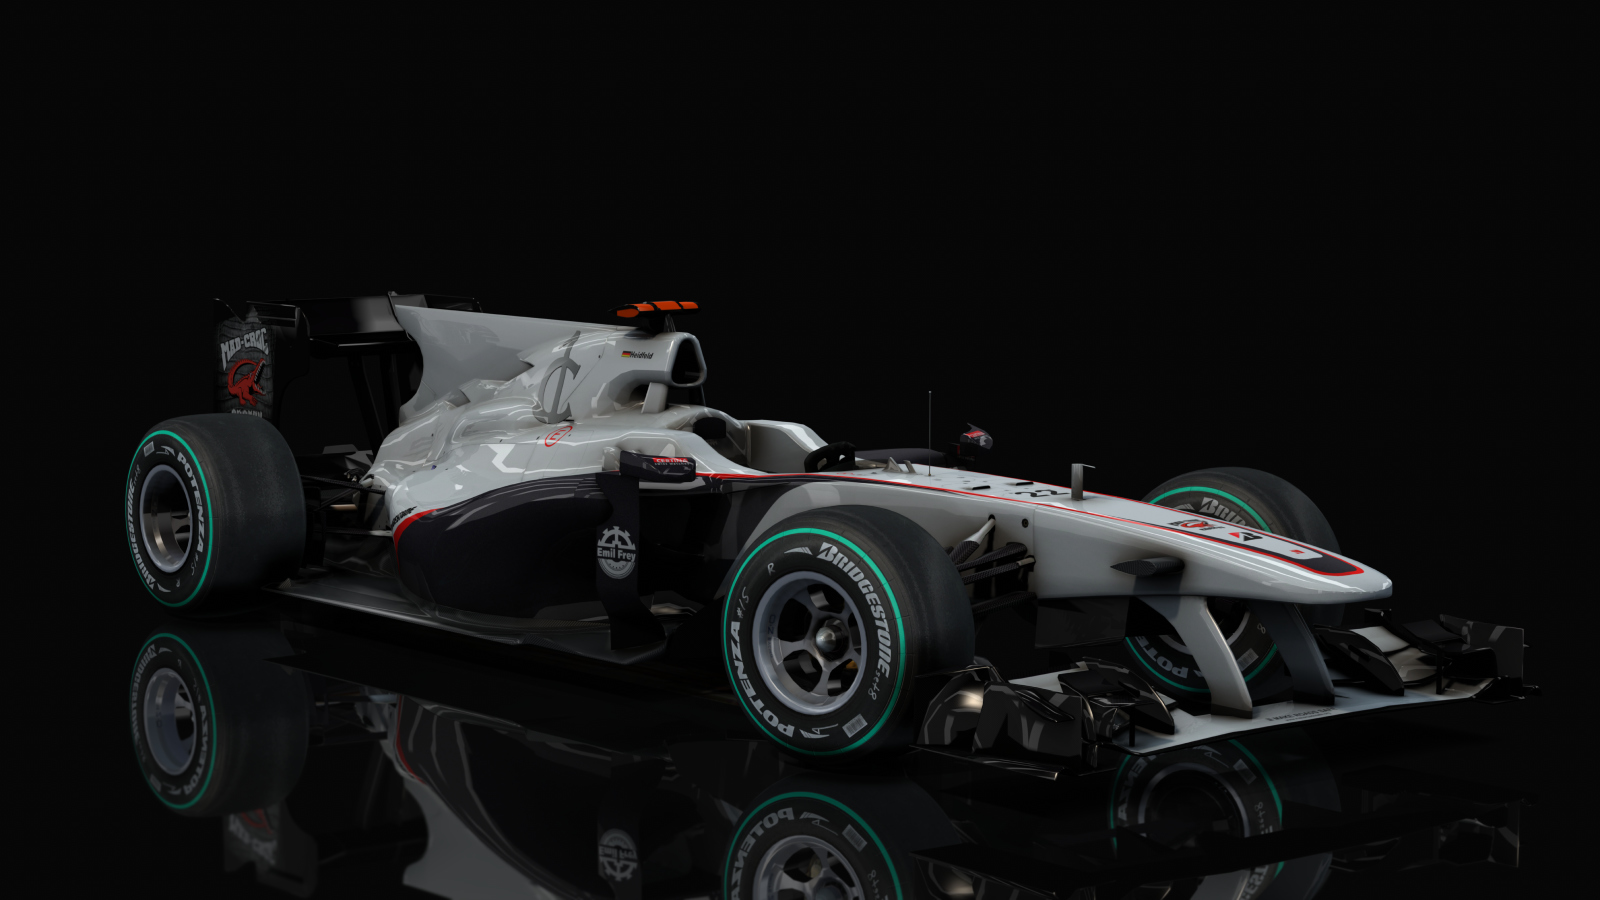 F1 2010 - Sauber C29, skin deLaRosa